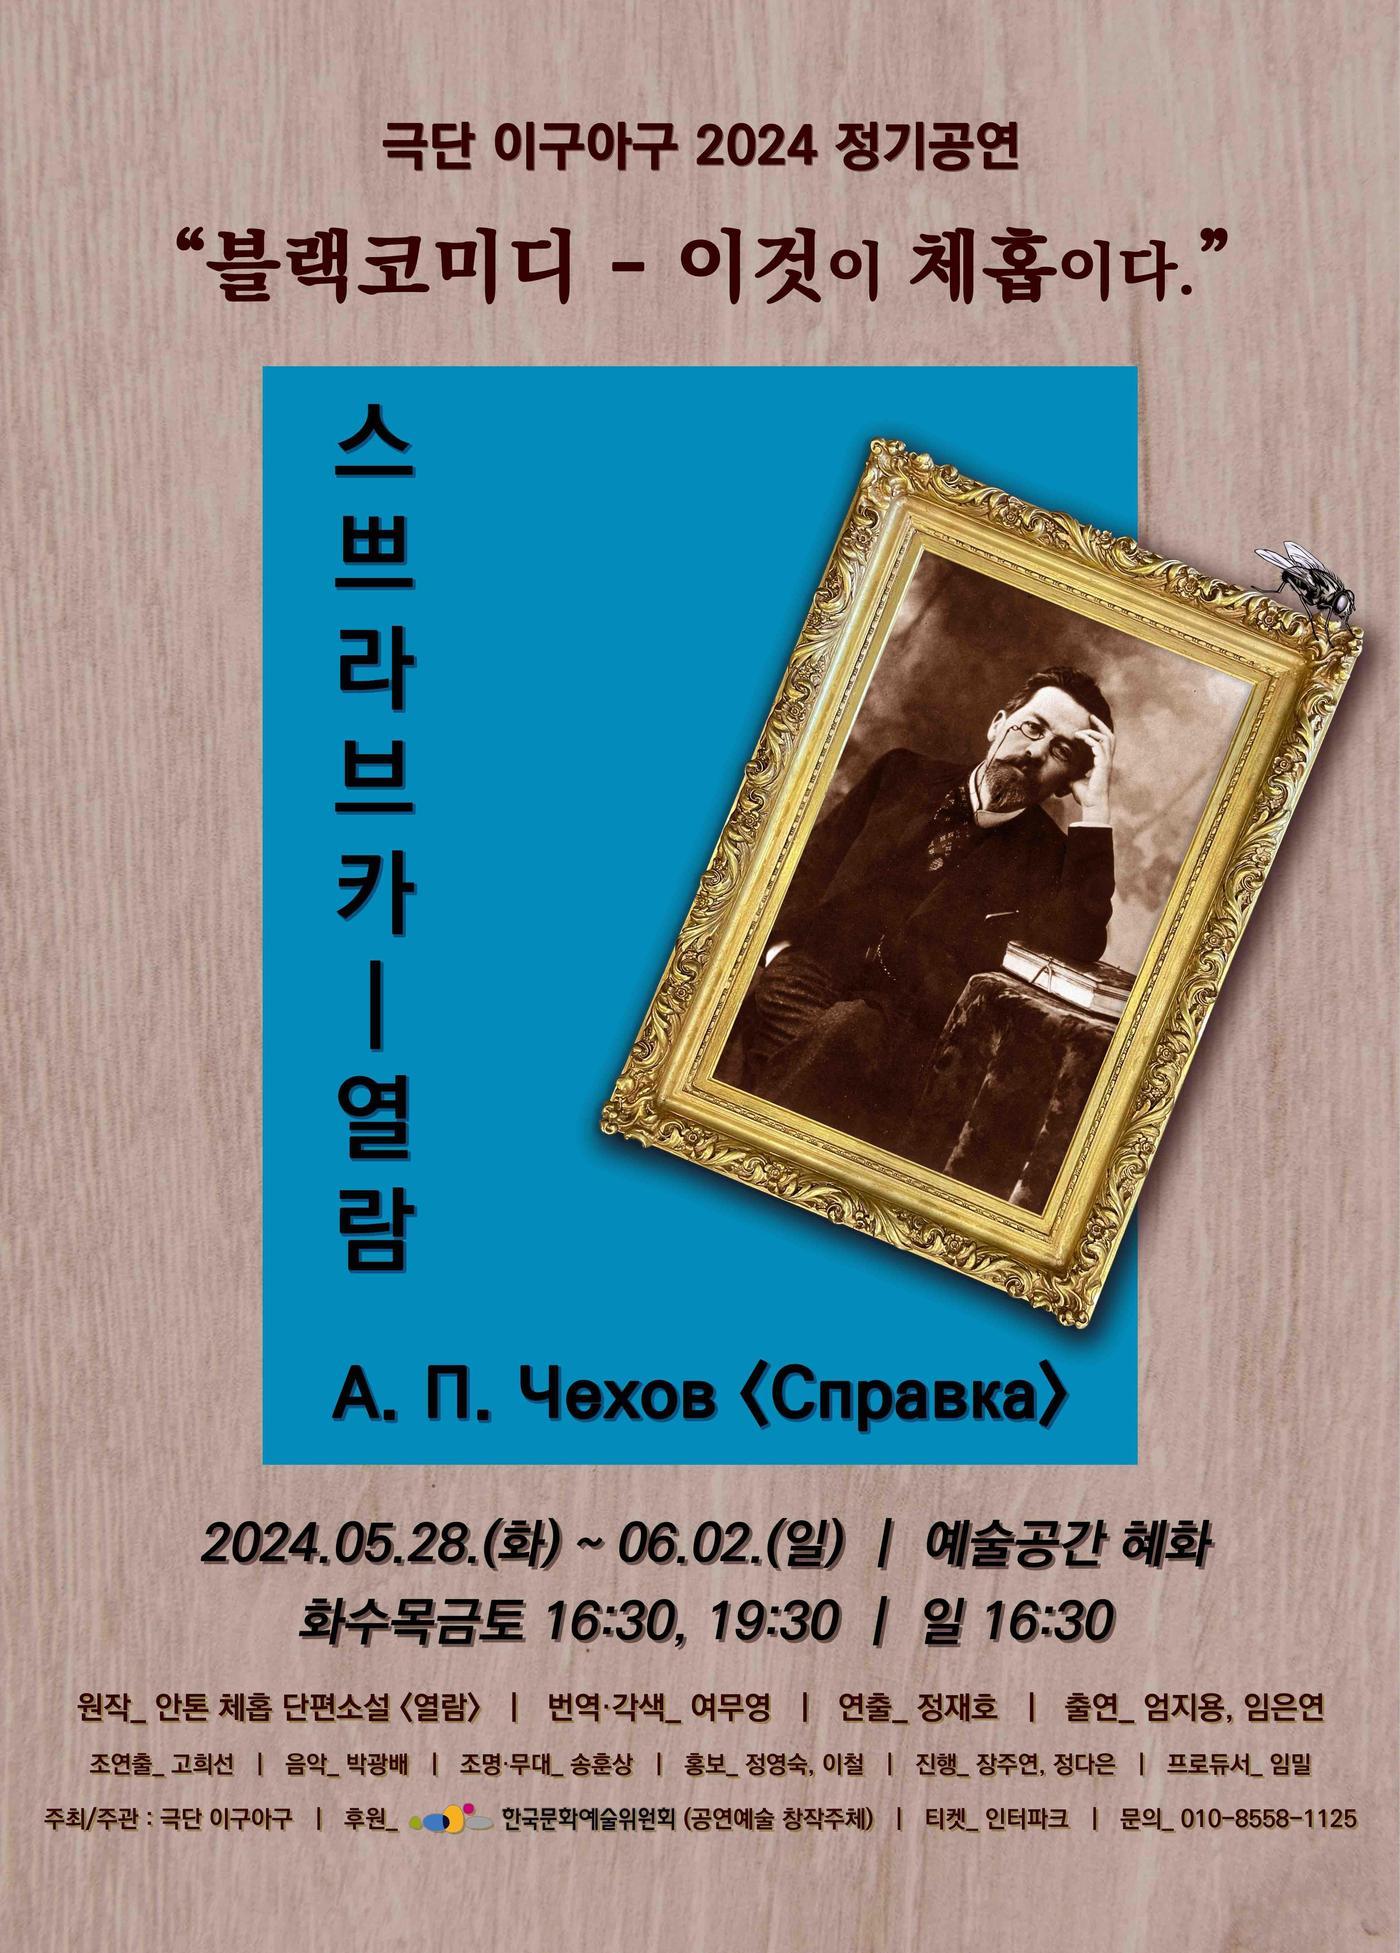 연극 &#39;스쁘라브카-열람&#39; 공연 포스터&#40;극단 이구아구 제공&#41;